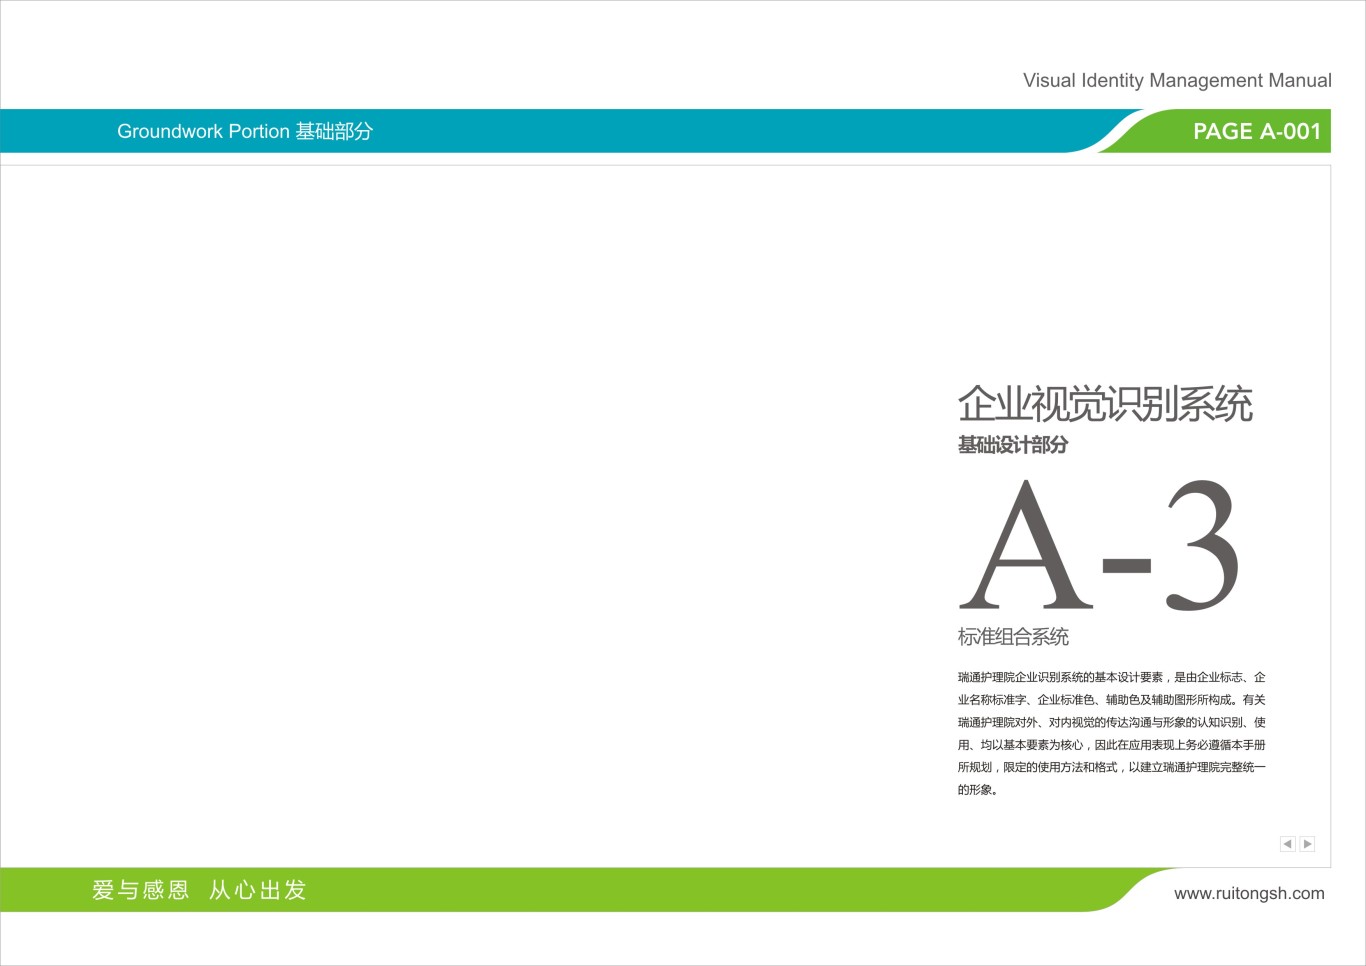 上海瑞通护理院标志VI设计图23